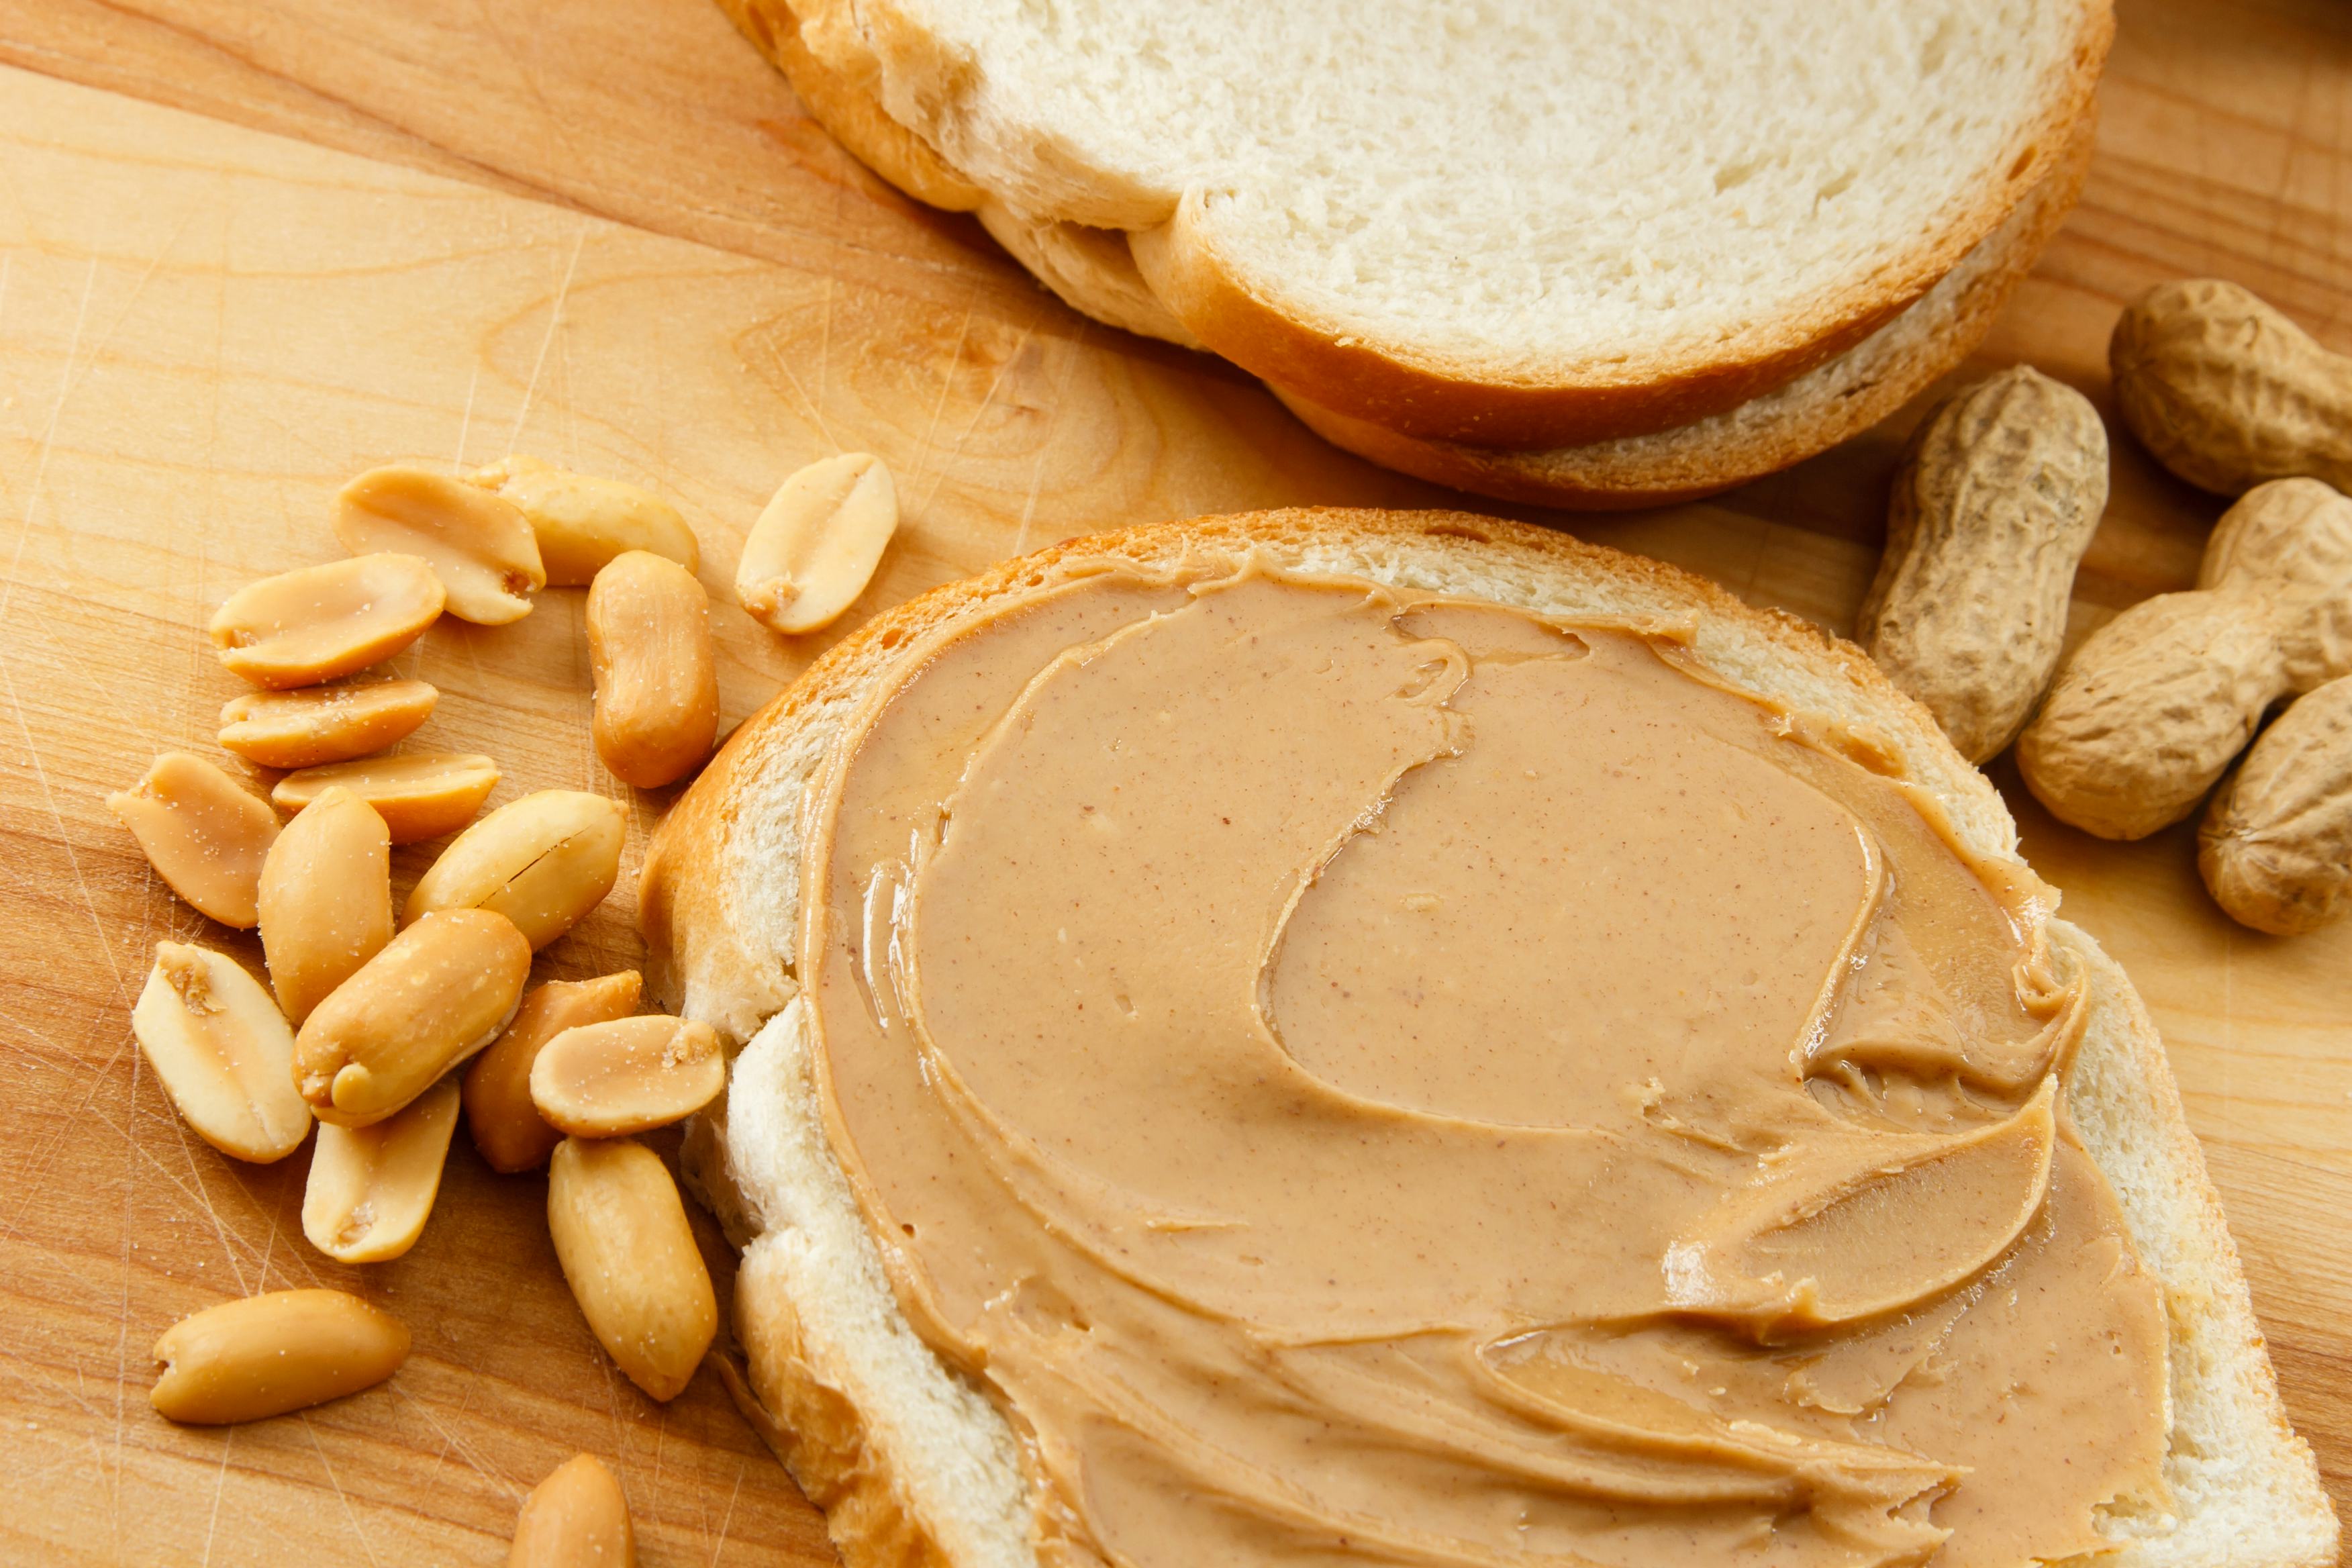 Voor mensen met een voedselallergie, zoals een notenallergie, zijn voedseletiketten vaak erg onduidelijk. Foto: Shutterstock